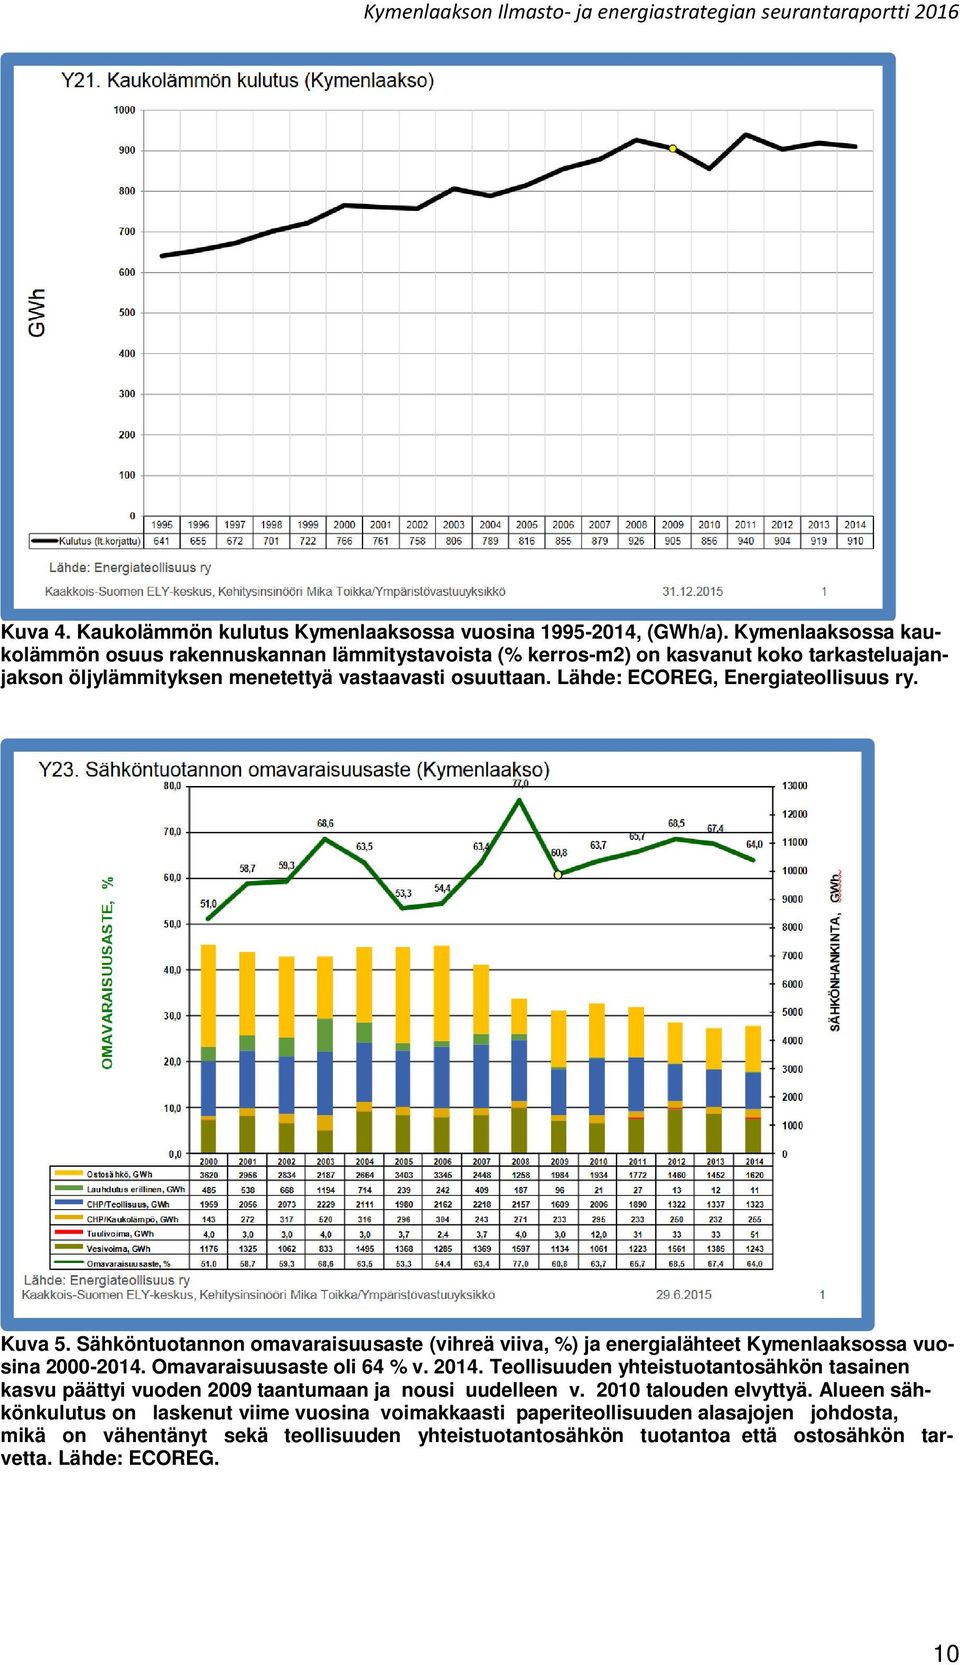 Lähde: ECOREG, Energiateollisuus ry. Kuva 5. Sähköntuotannon omavaraisuusaste (vihreä viiva, %) ja energialähteet Kymenlaaksossa vuosina 2000-2014. Omavaraisuusaste oli 64 % v. 2014.